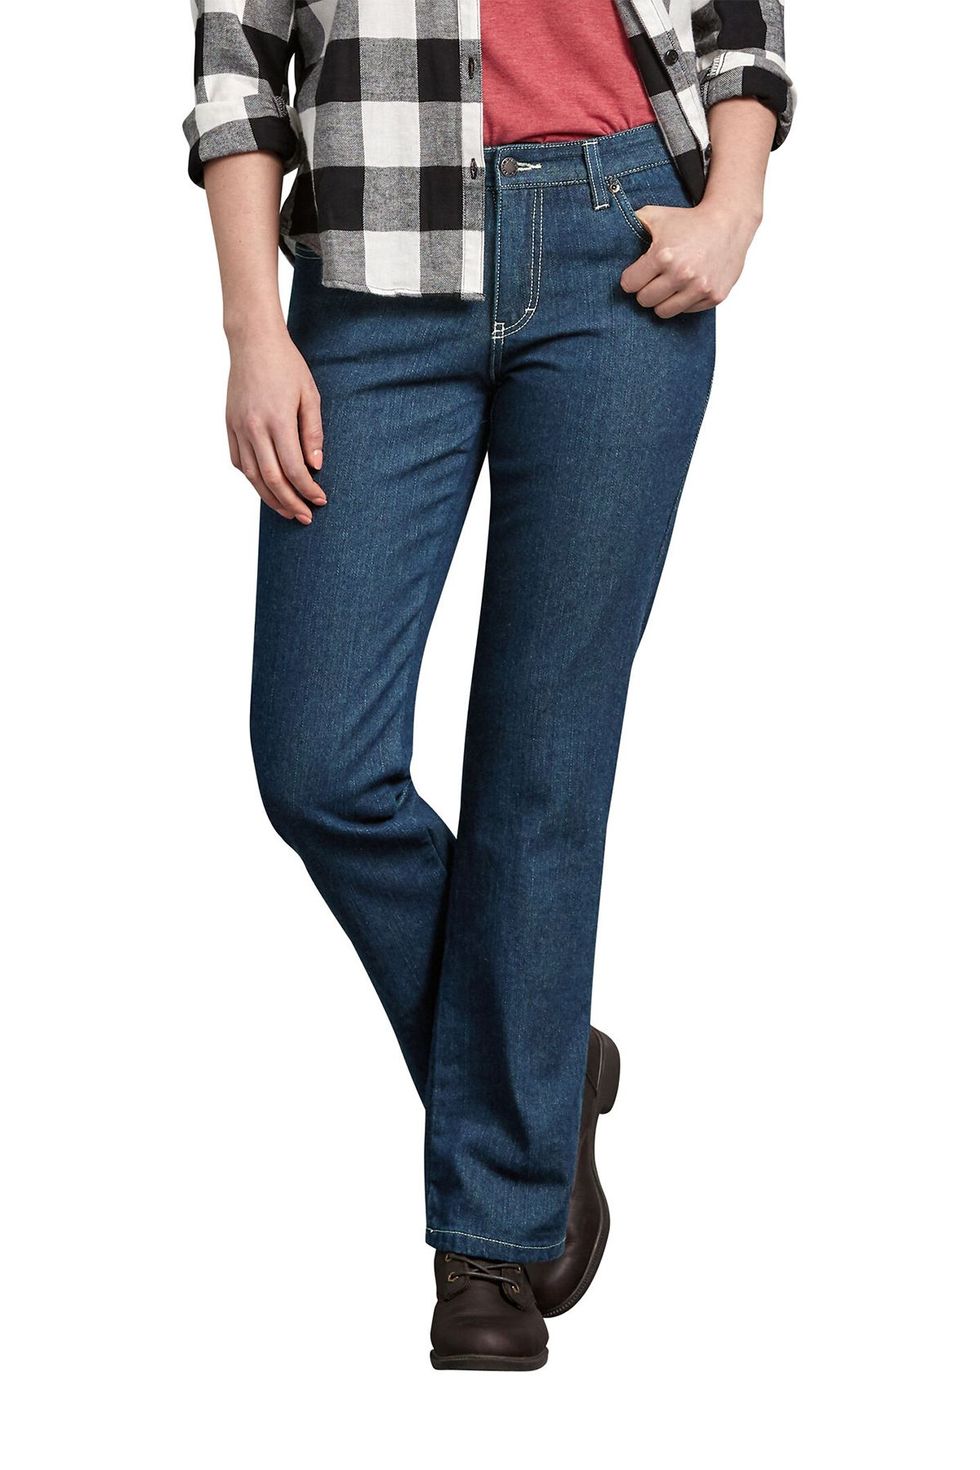  Fleece Lined Jeans Women Womens Fleece Lined Jeans Flannel  Lined Womens Jeans Winter Pants Skinny Jeans